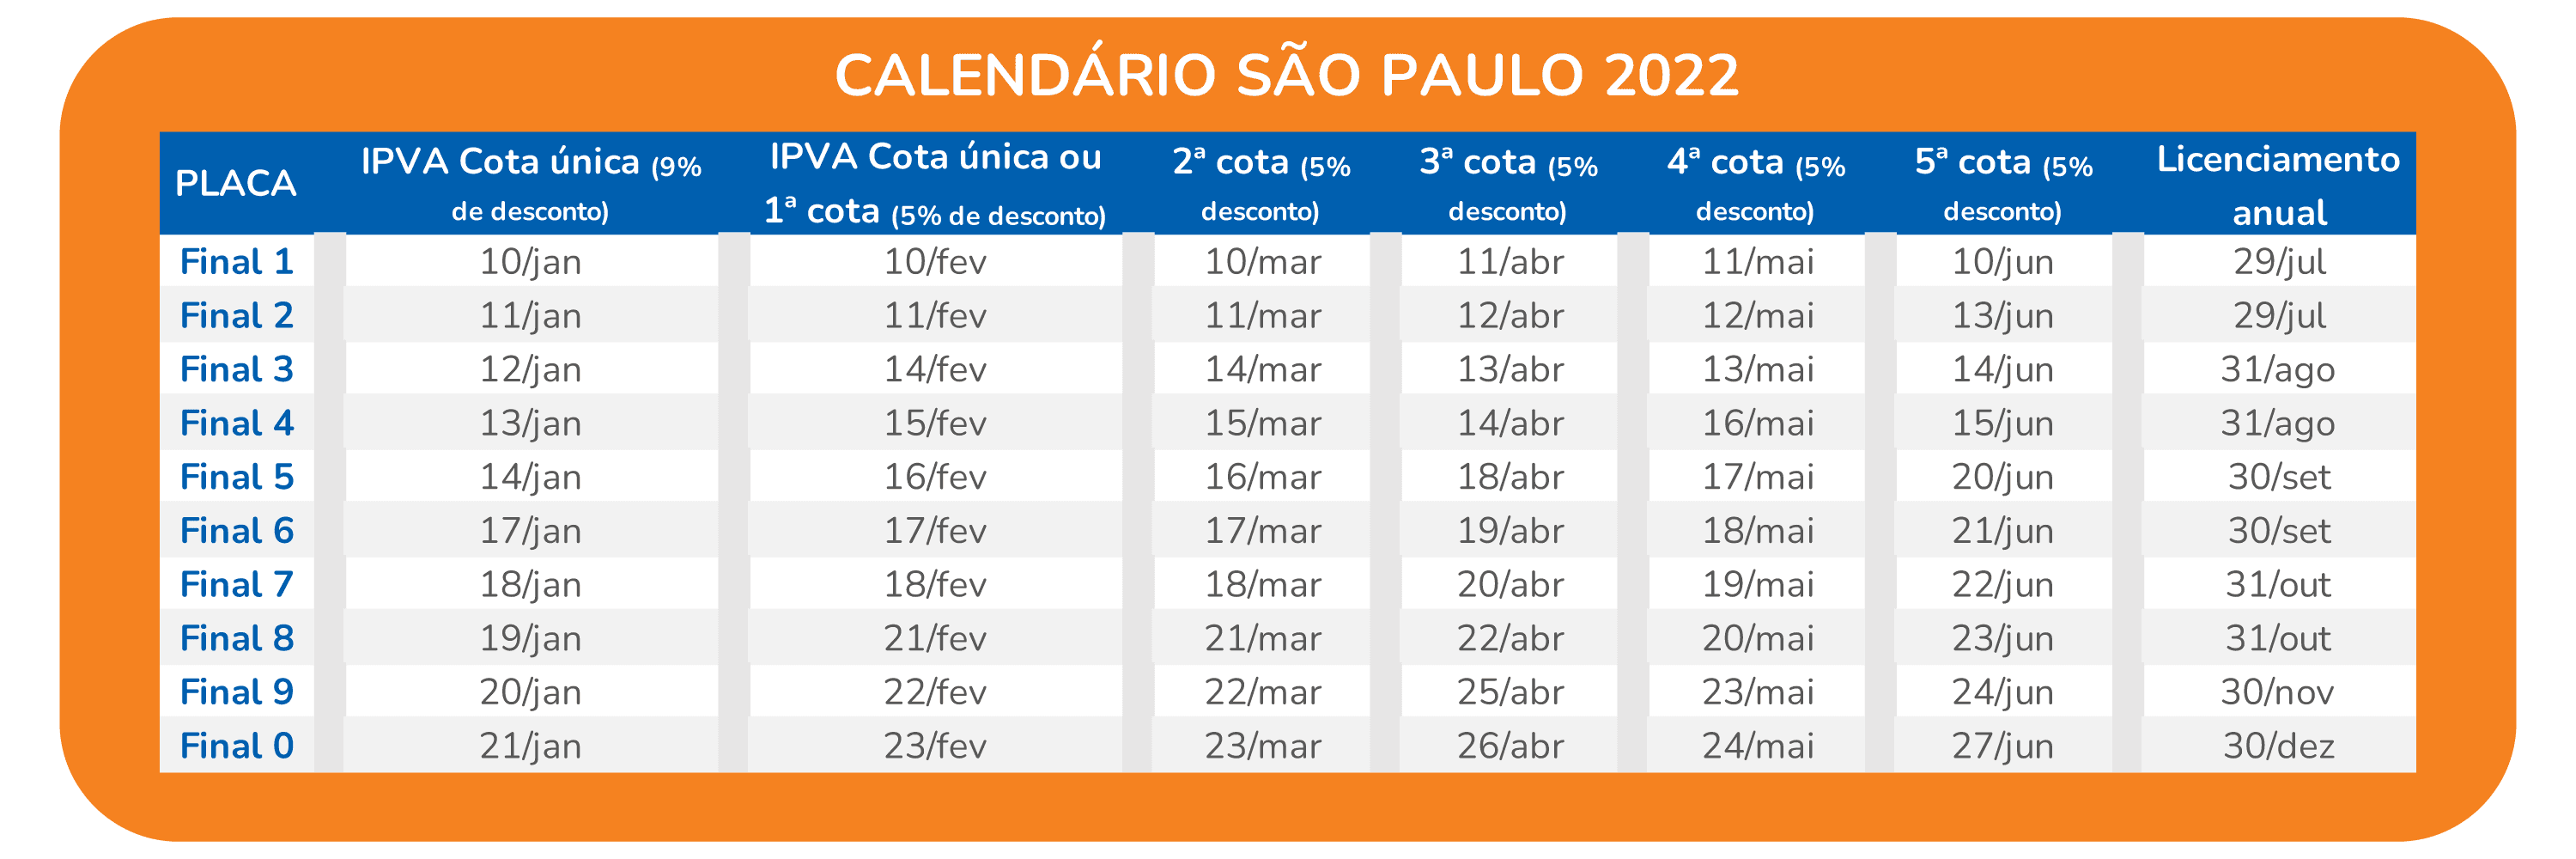 Calendário São Paulo